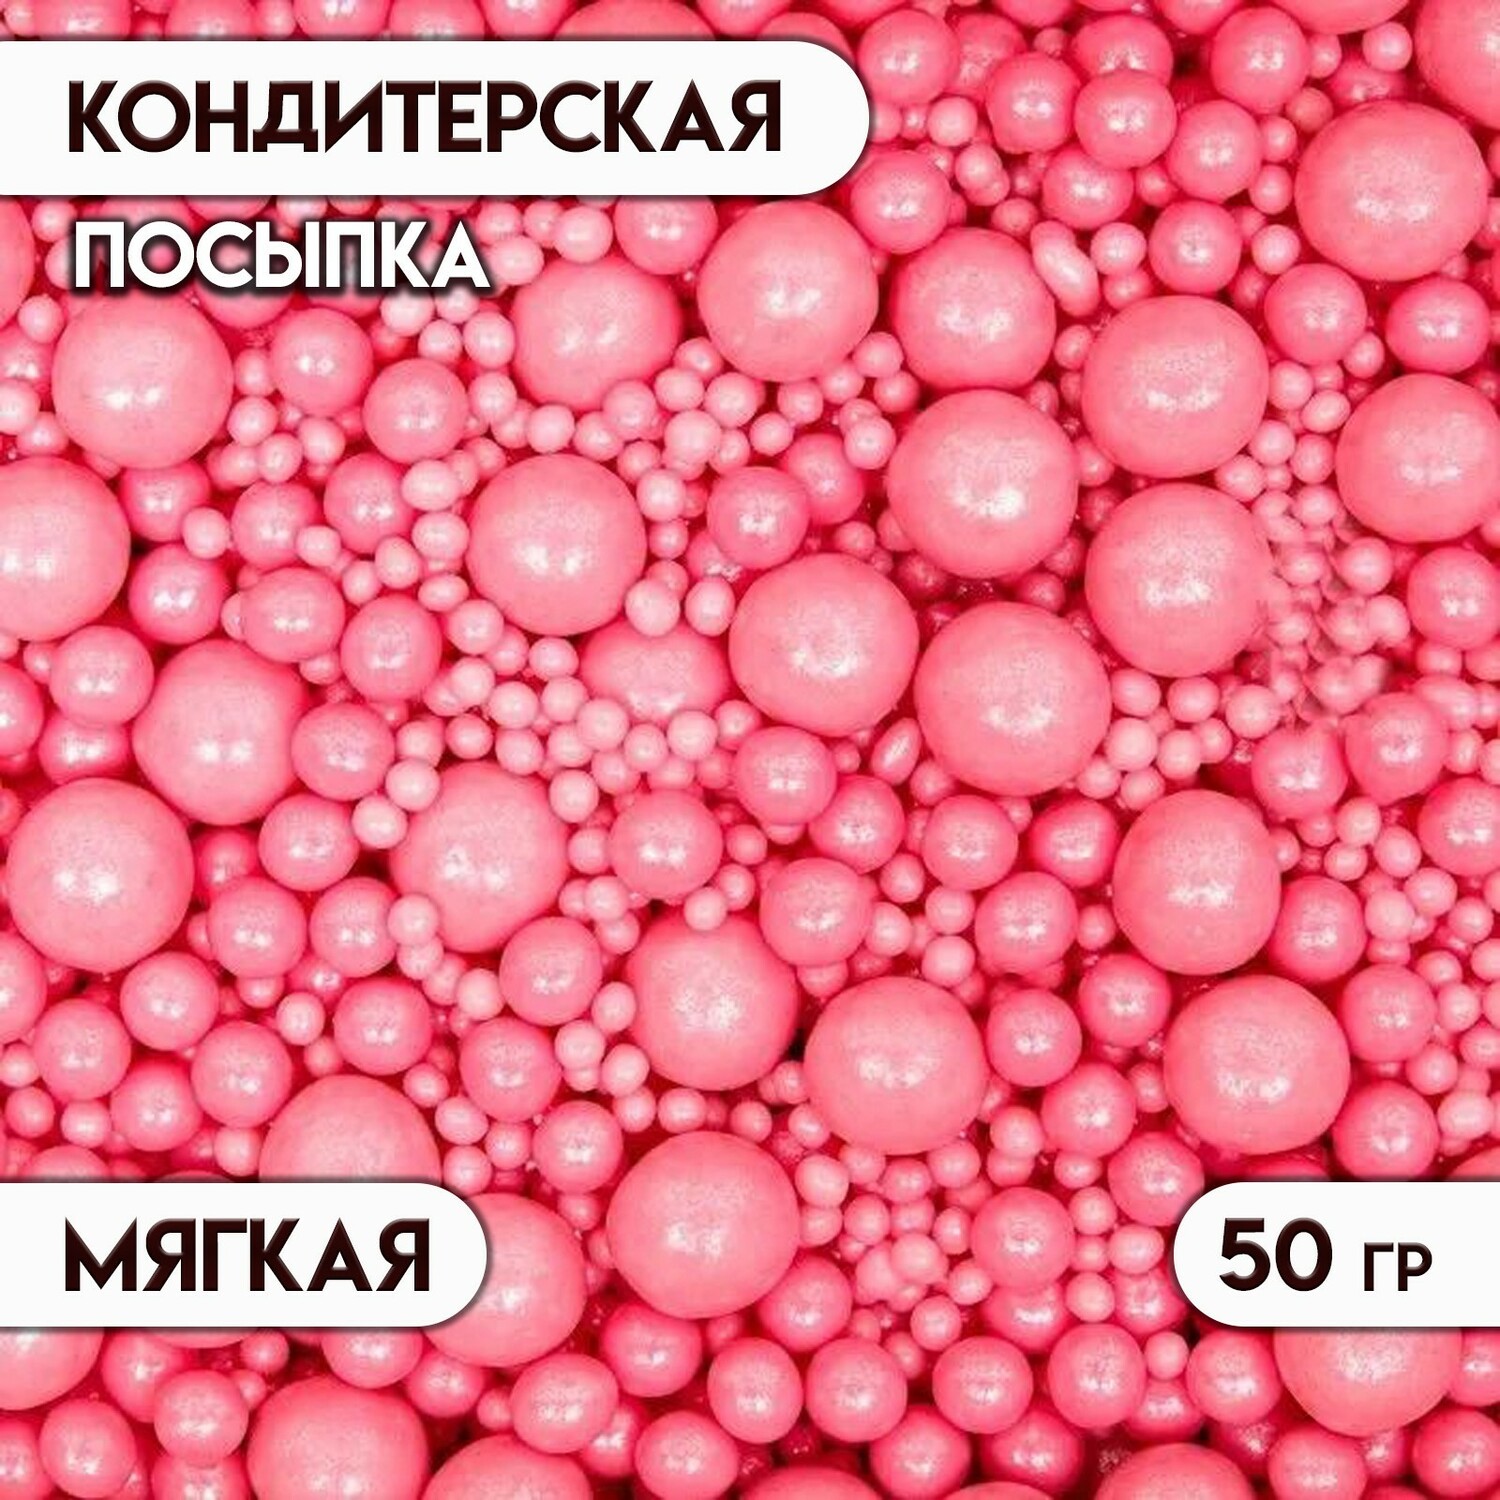 Кондитерская посыпка с мягким центром "Жемчуг", розовая, 50 г